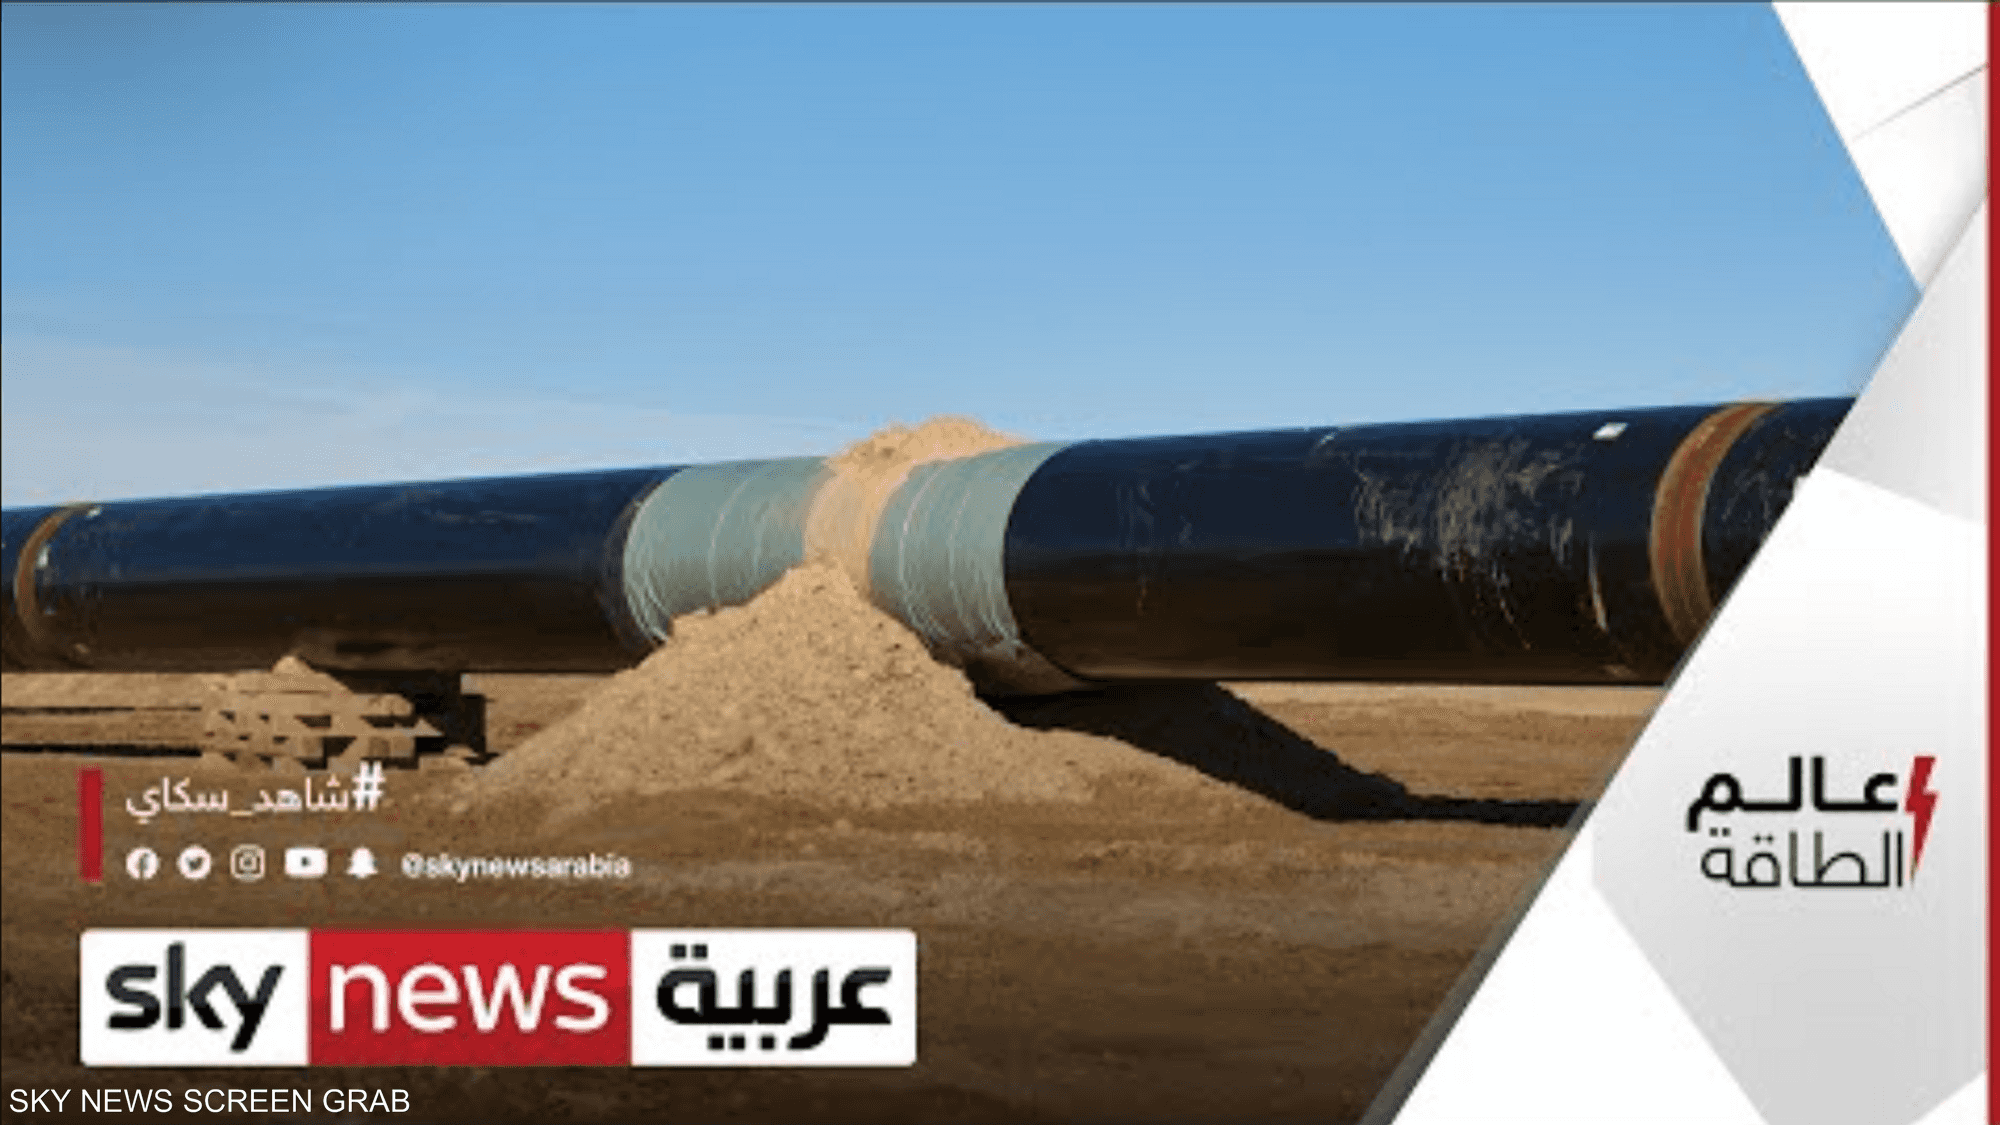 سامر موسيس: نرجح توصل الجزائر والمغرب لاتفاق حول خط الغاز